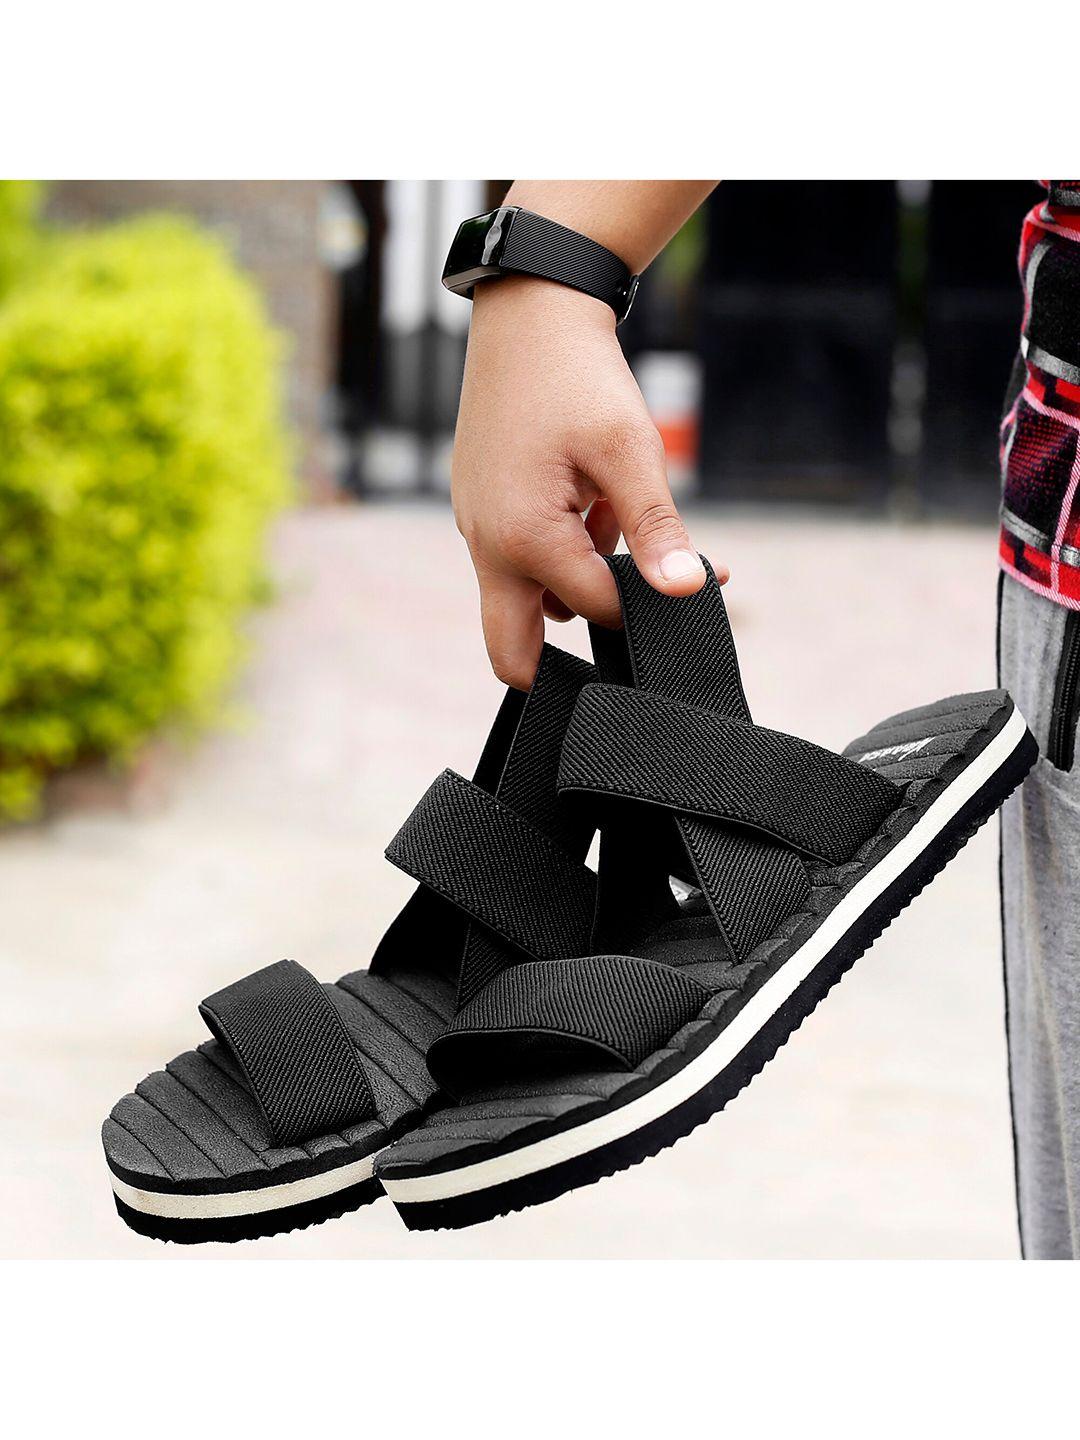 kraasa men black comfort sandals